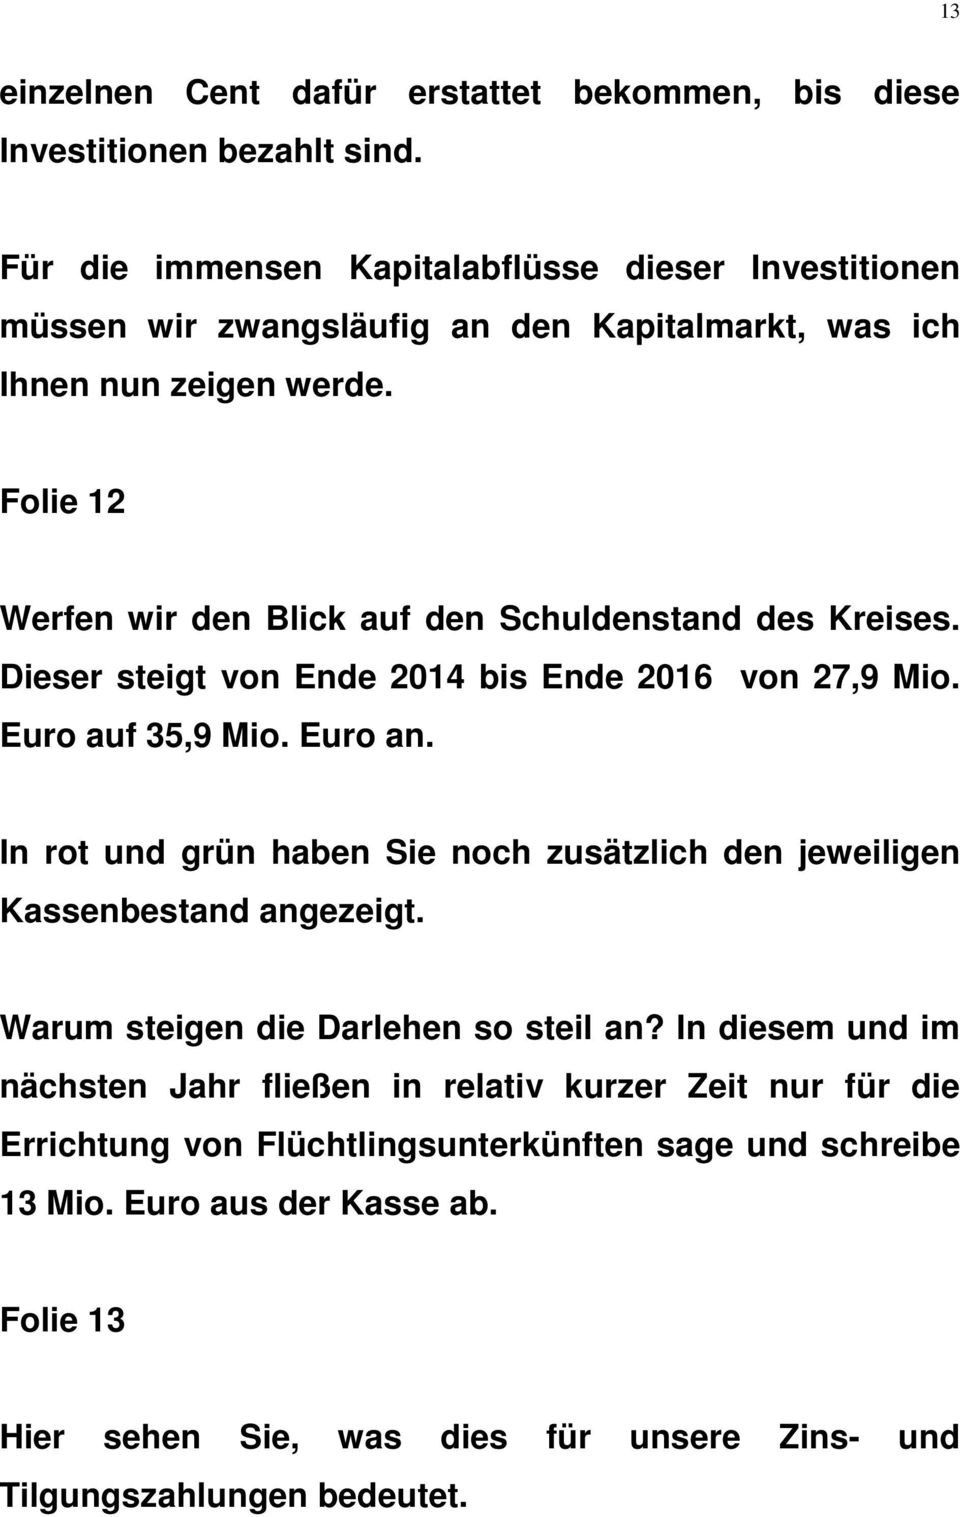 Folie 12 Werfen wir den Blick auf den Schuldenstand des Kreises. Dieser steigt von Ende 2014 bis Ende 2016 von 27,9 Mio. Euro auf 35,9 Mio. Euro an.